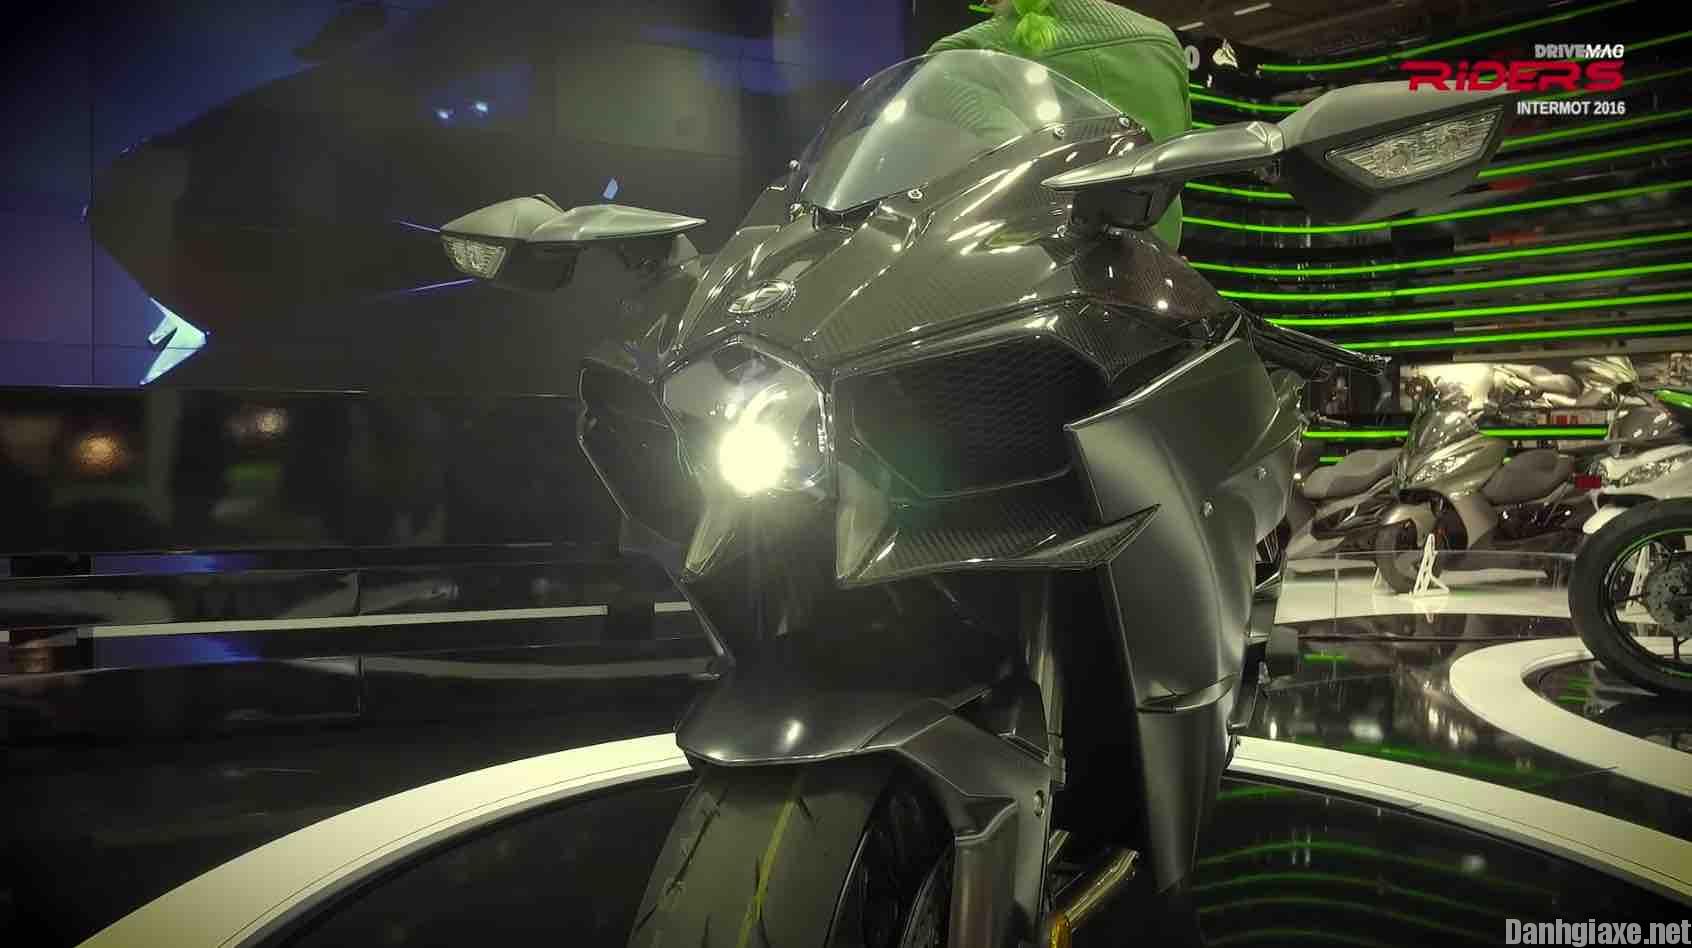 Đánh giá xe Kawasaki Ninja H2 2017 thông số kỹ thuật và giá bán mới ...